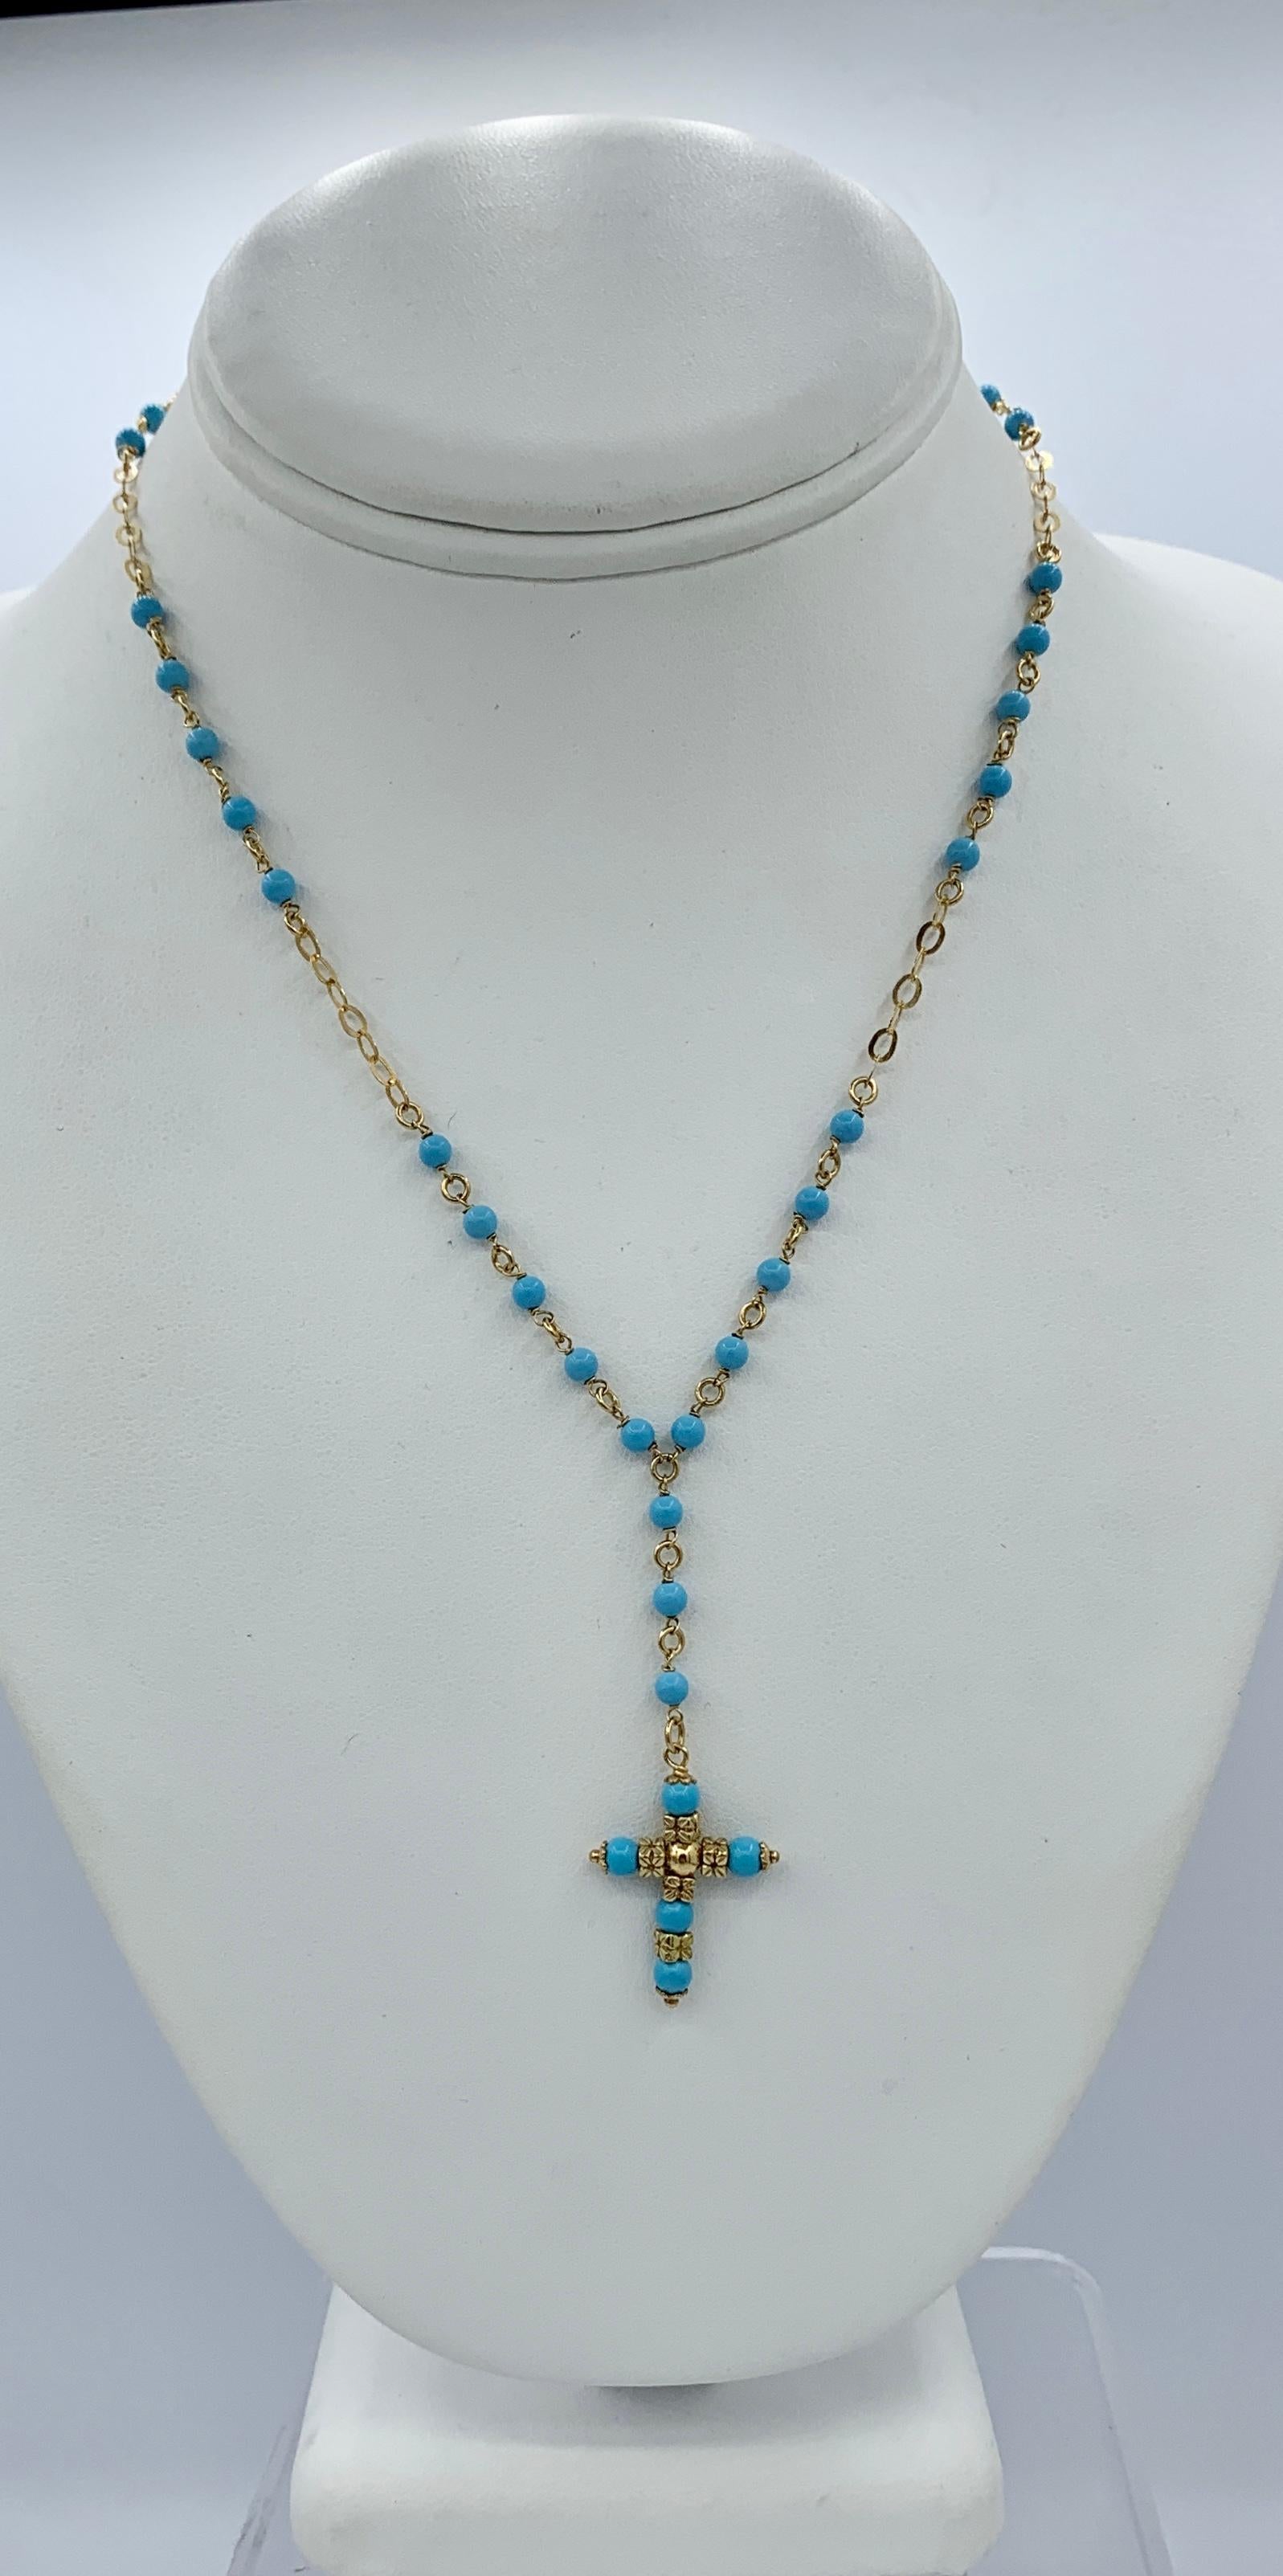 Il s'agit d'un magnifique collier pendentif croix en or jaune 14 carats avec turquoise perse.  Ce joli collier est composé de perles de turquoise perse entrecoupées de maillons en or jaune 14 carats.  Au centre se trouve un pendentif en forme de